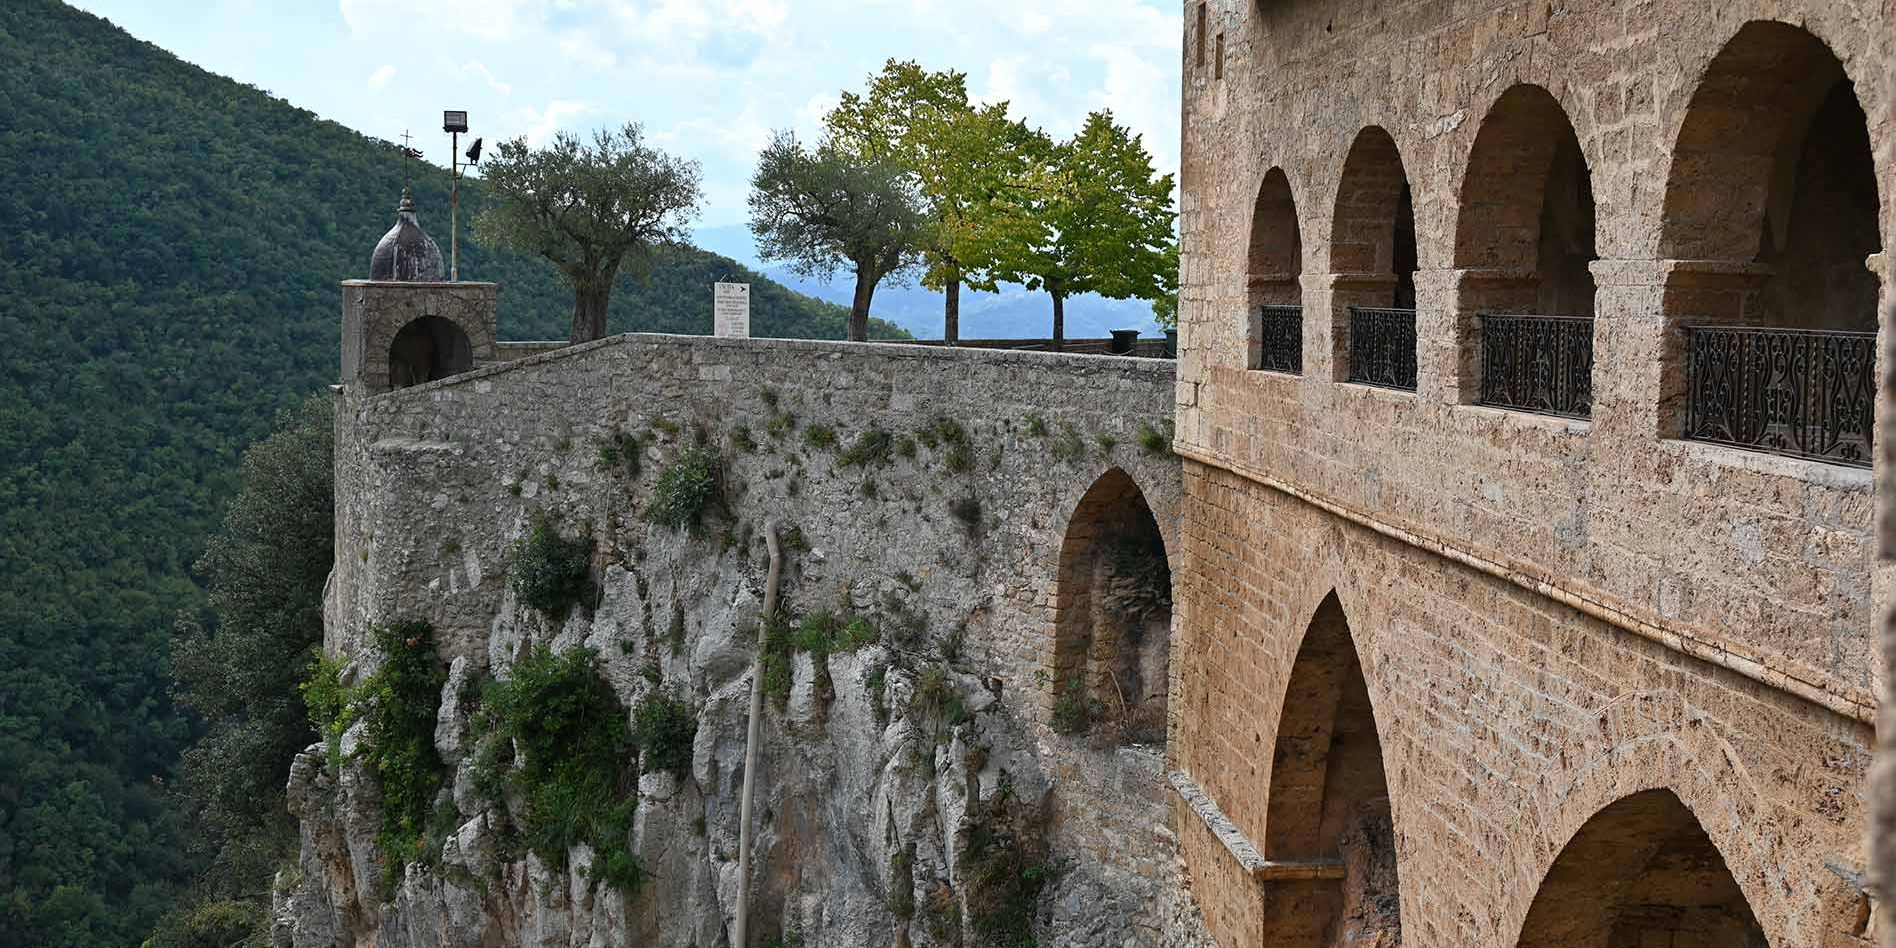 An steilem Hang liegt das Kloster des Hl. Benedikt in Subiaco.